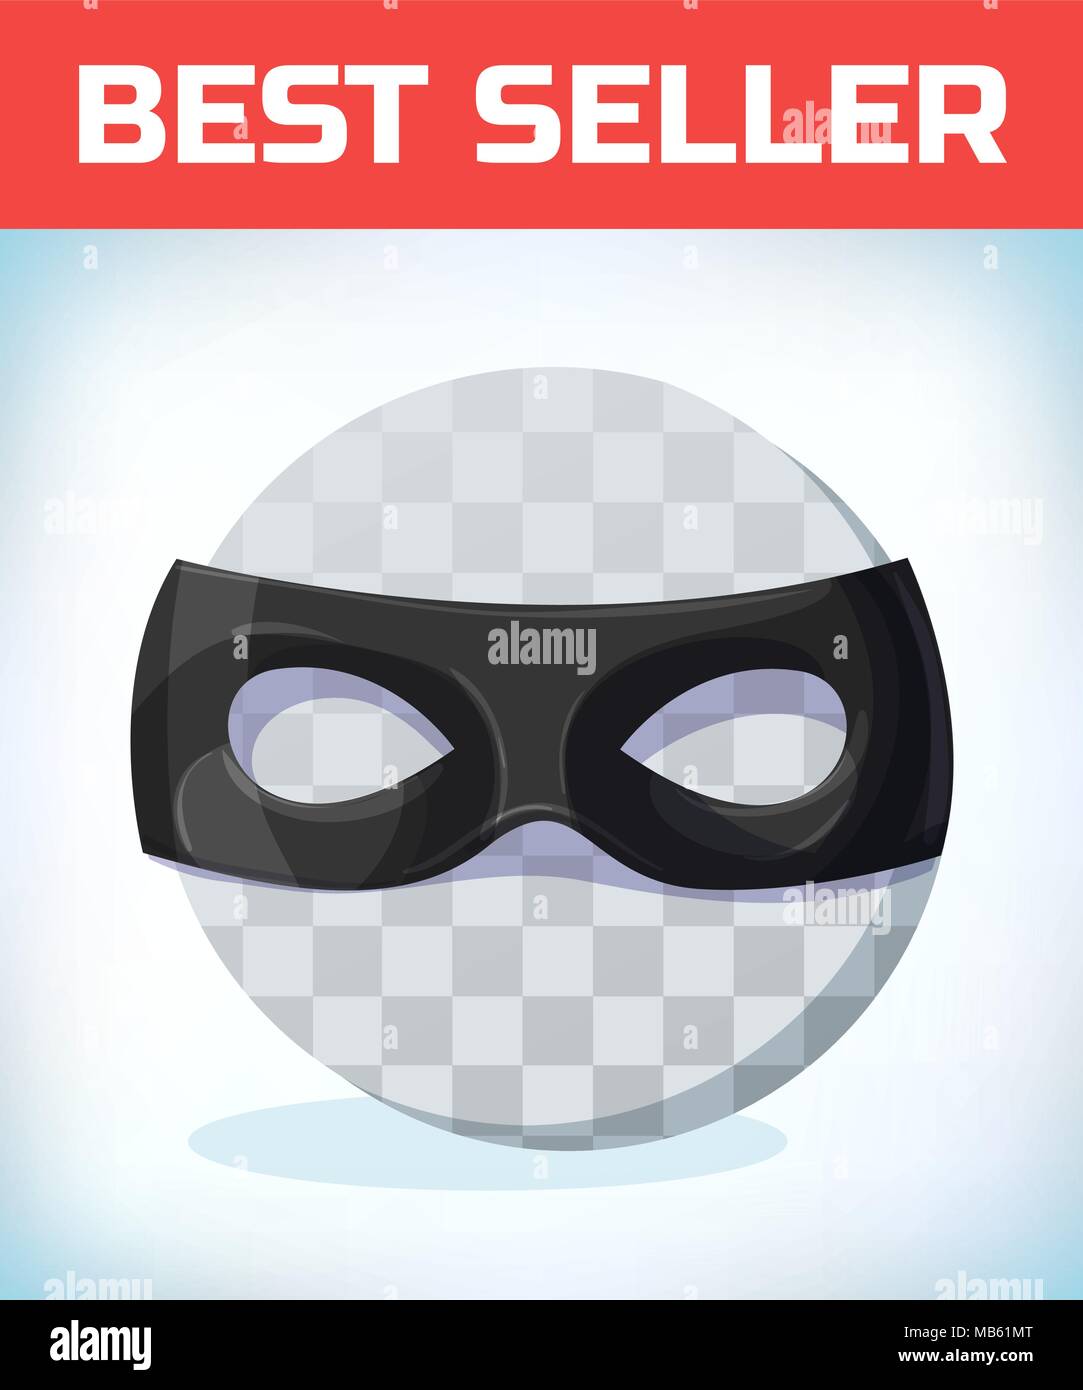 Zorro mask immagini e fotografie stock ad alta risoluzione - Alamy